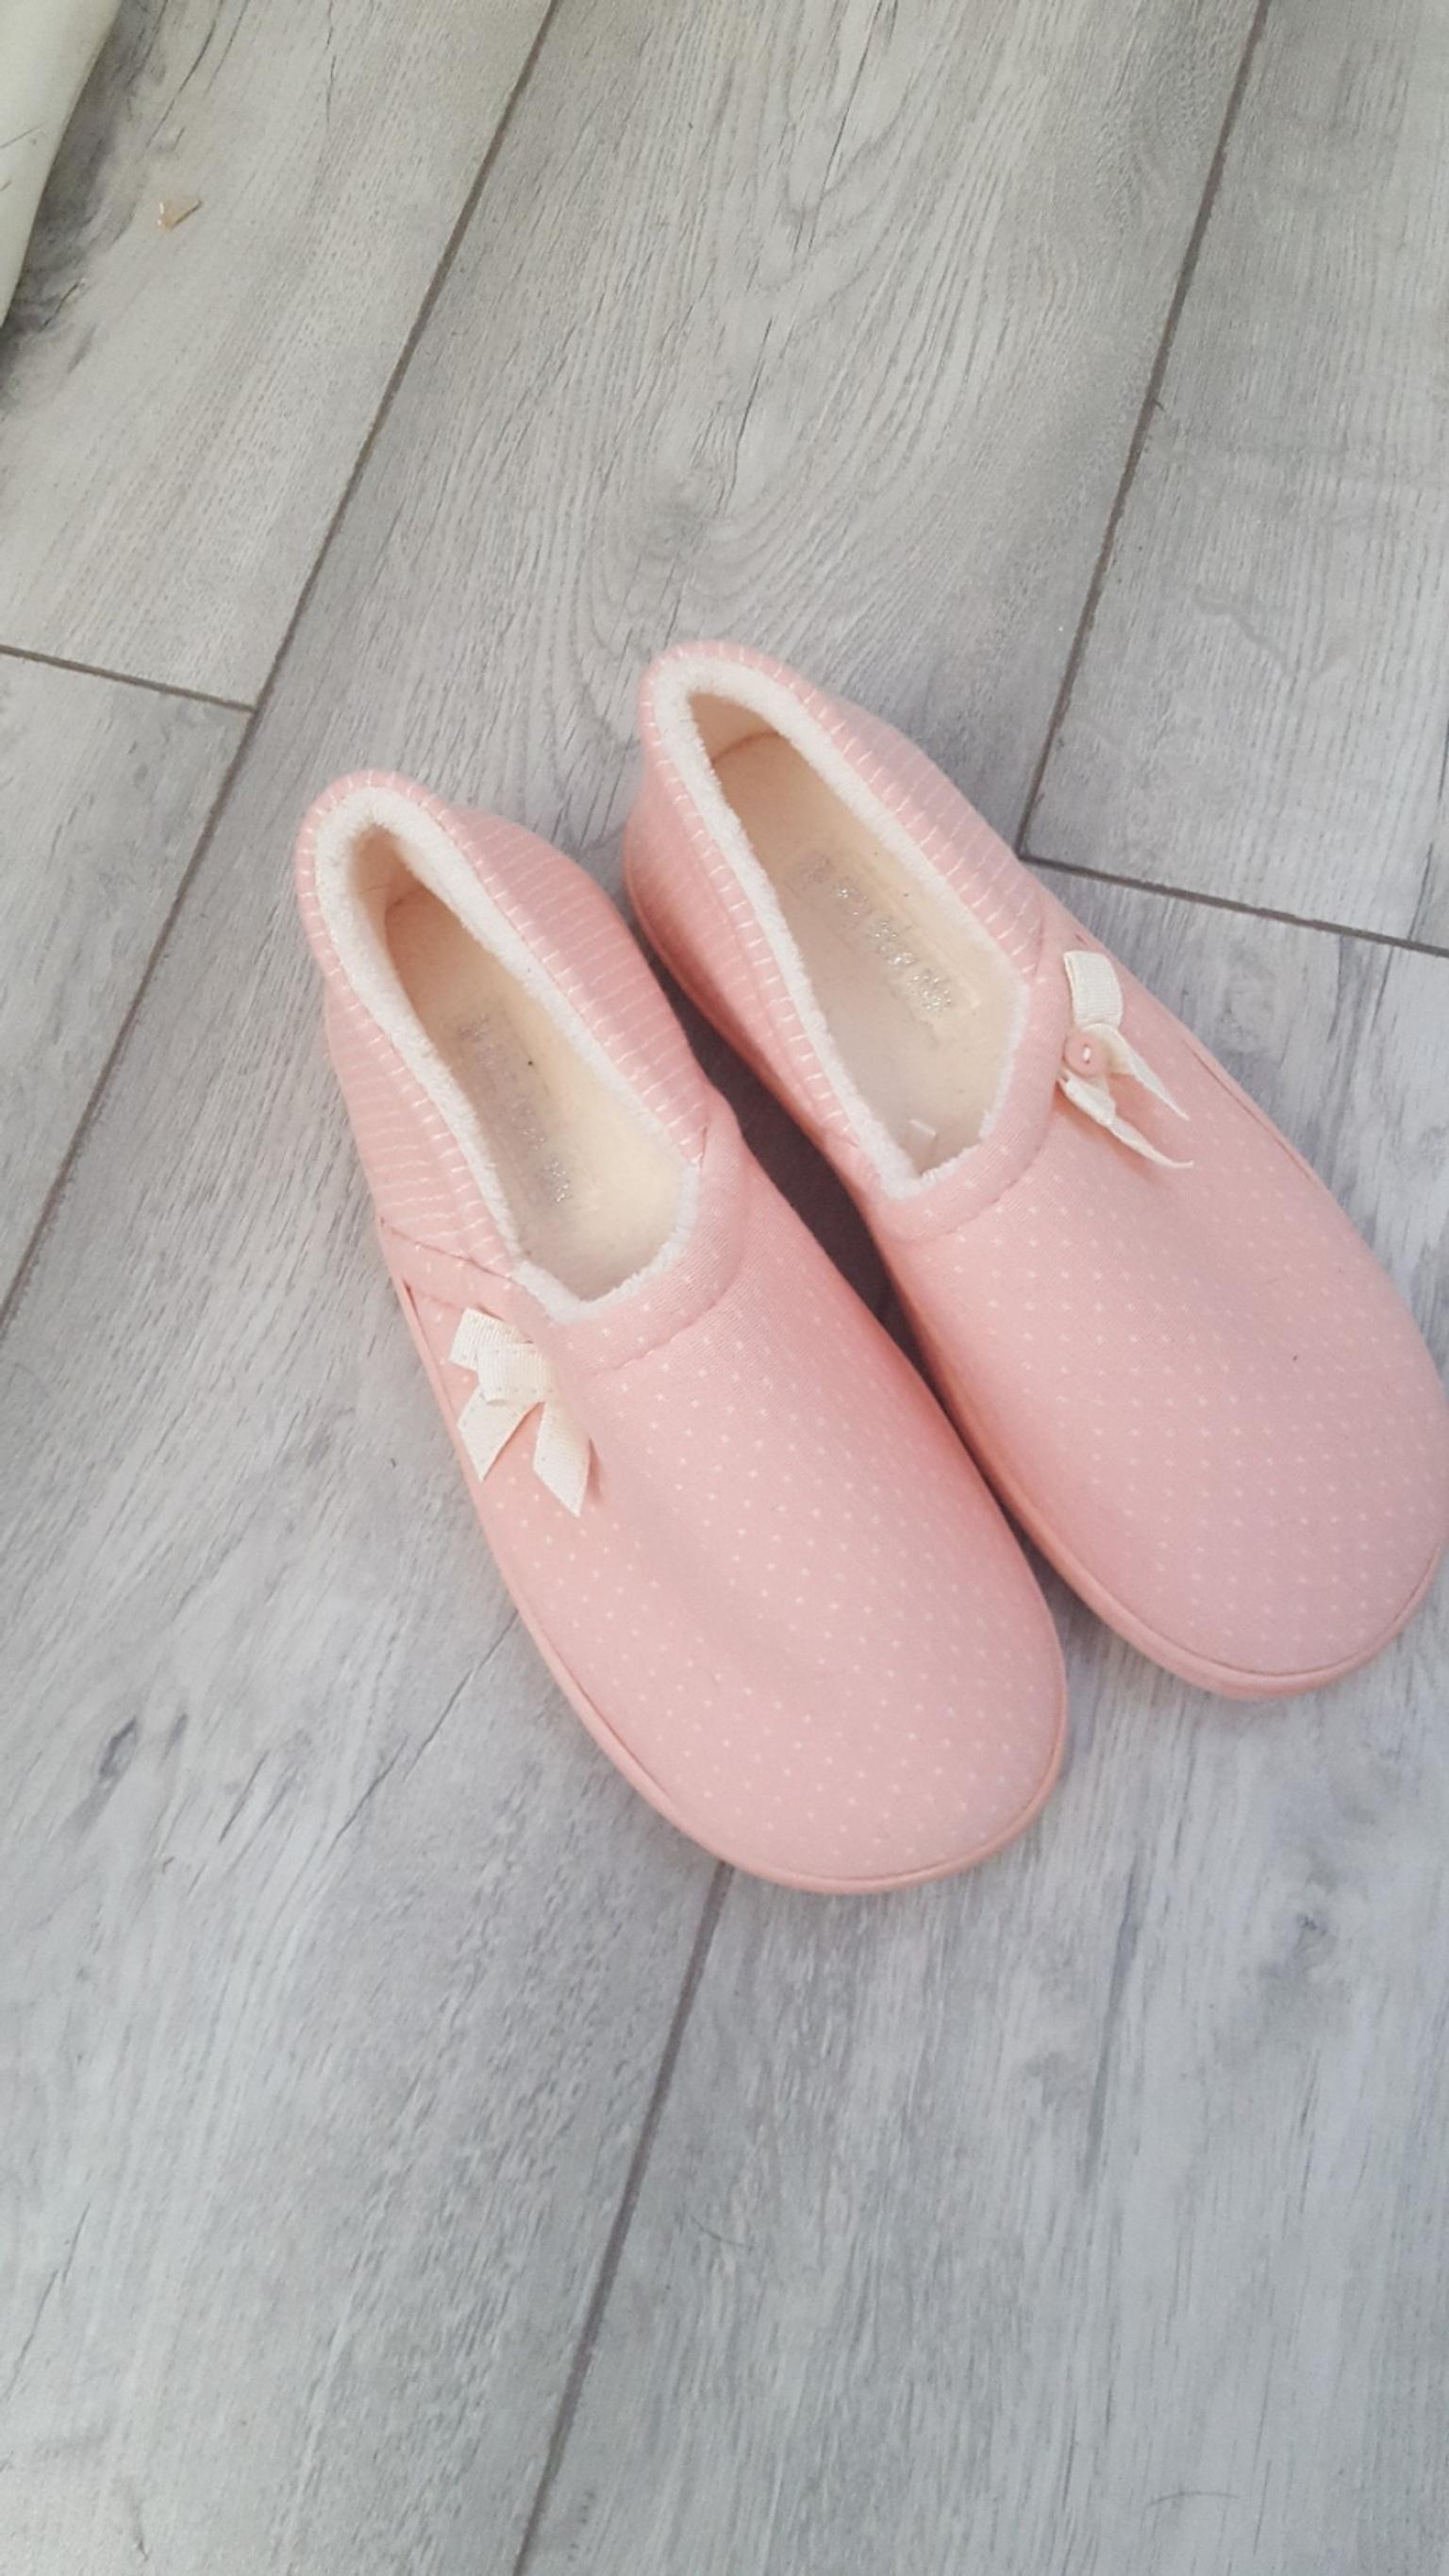 tesco girls slippers